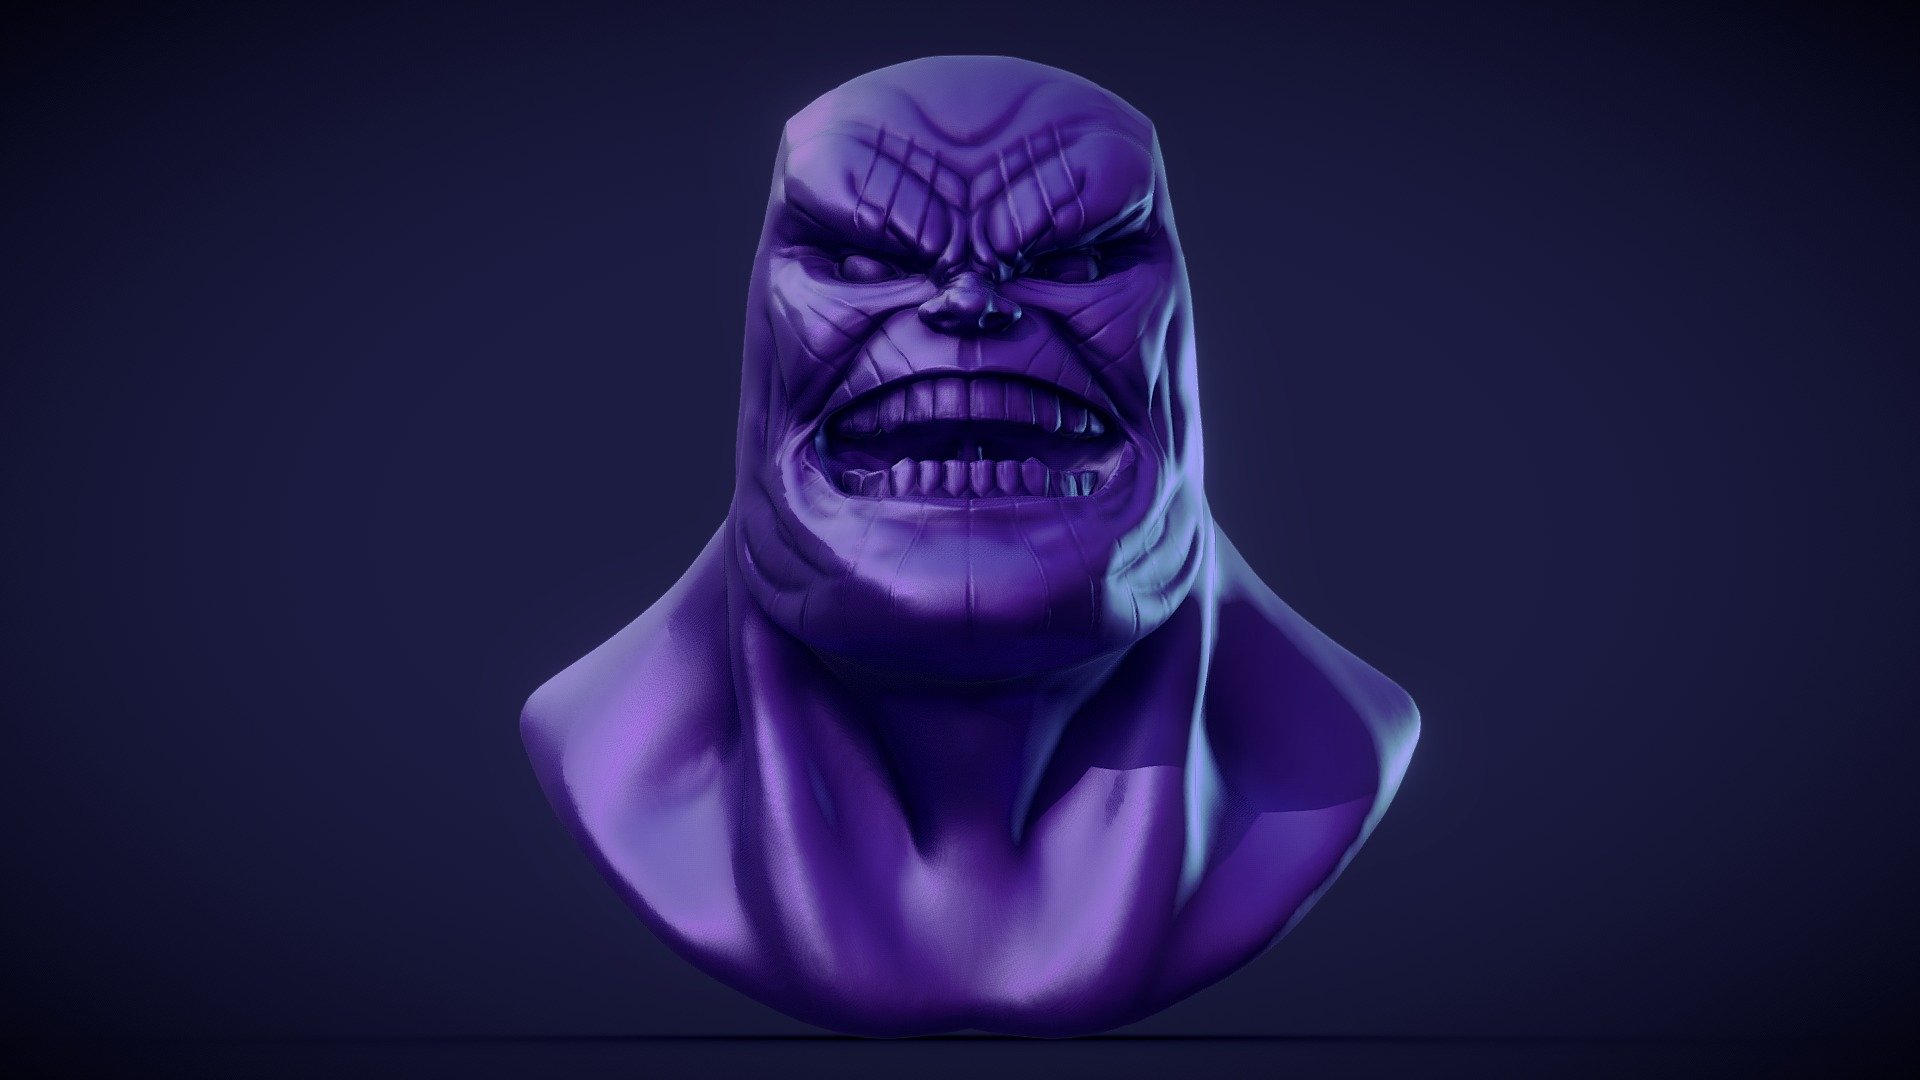 Thanos Head - Buy Royalty Free 3D model by doncha_magoso (@doncha_magoso)  [cb00440]